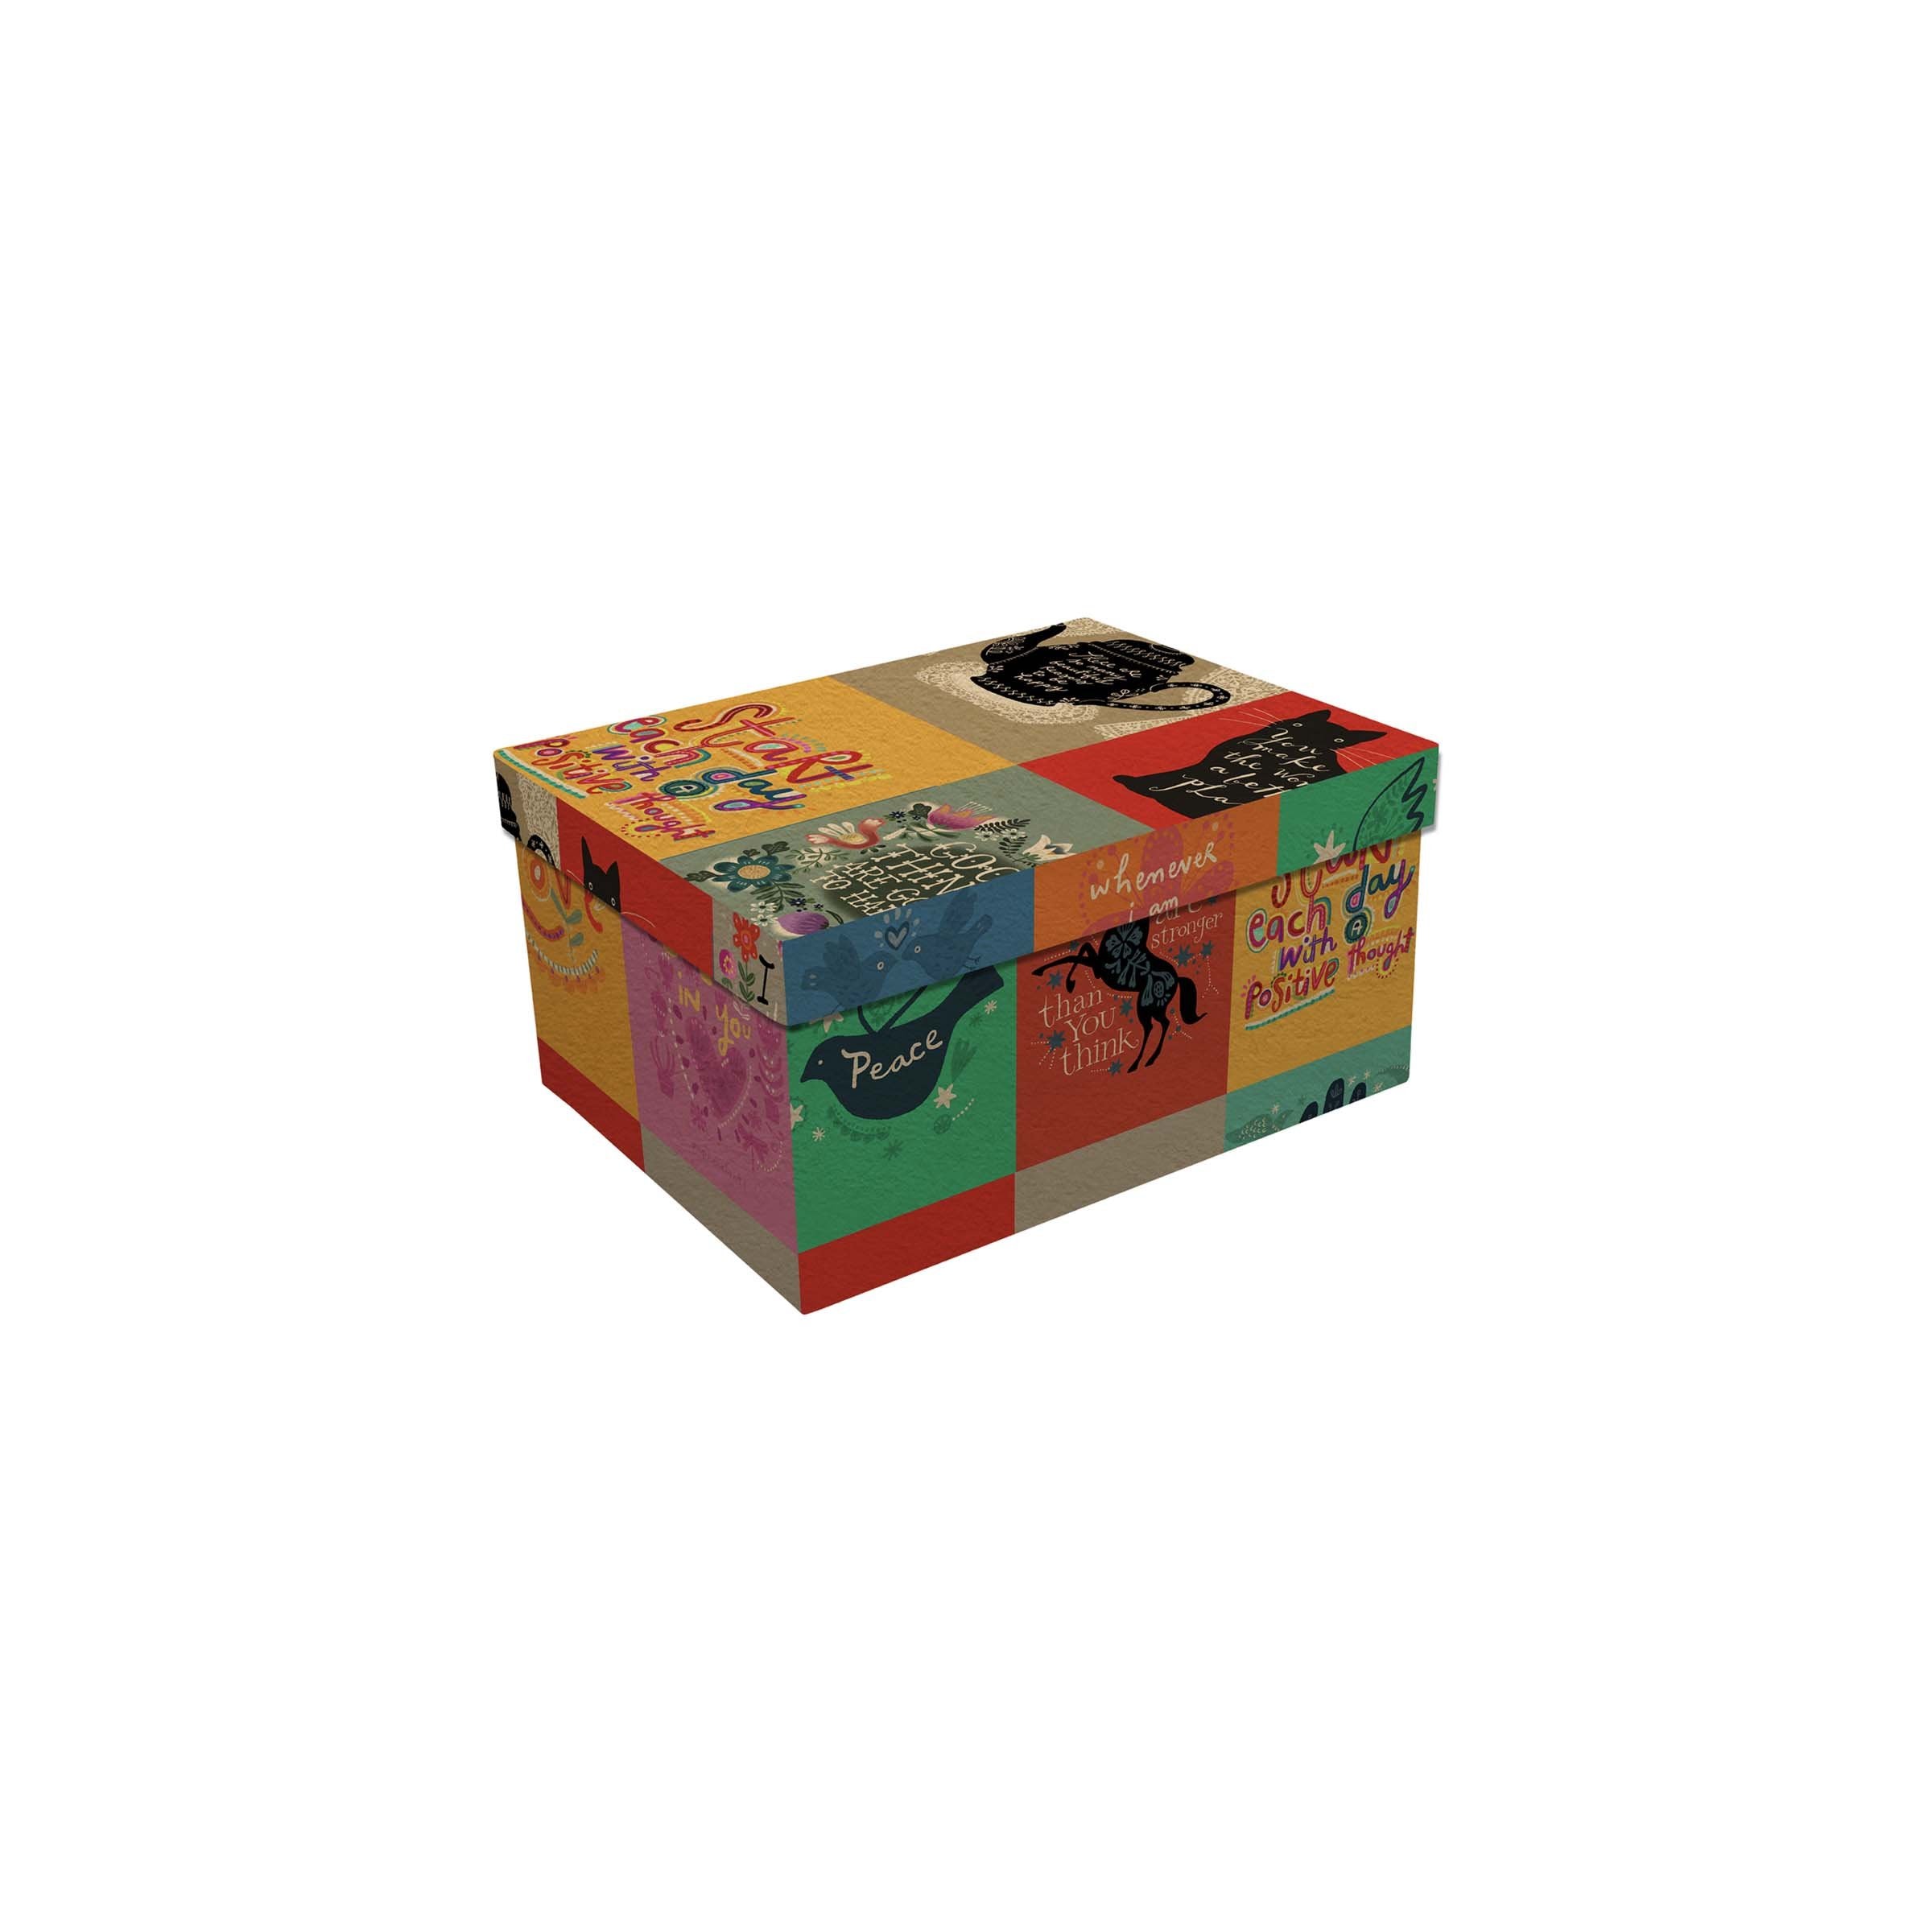 Rectangular Gift Box: 4.5" x 3" x 2.5"